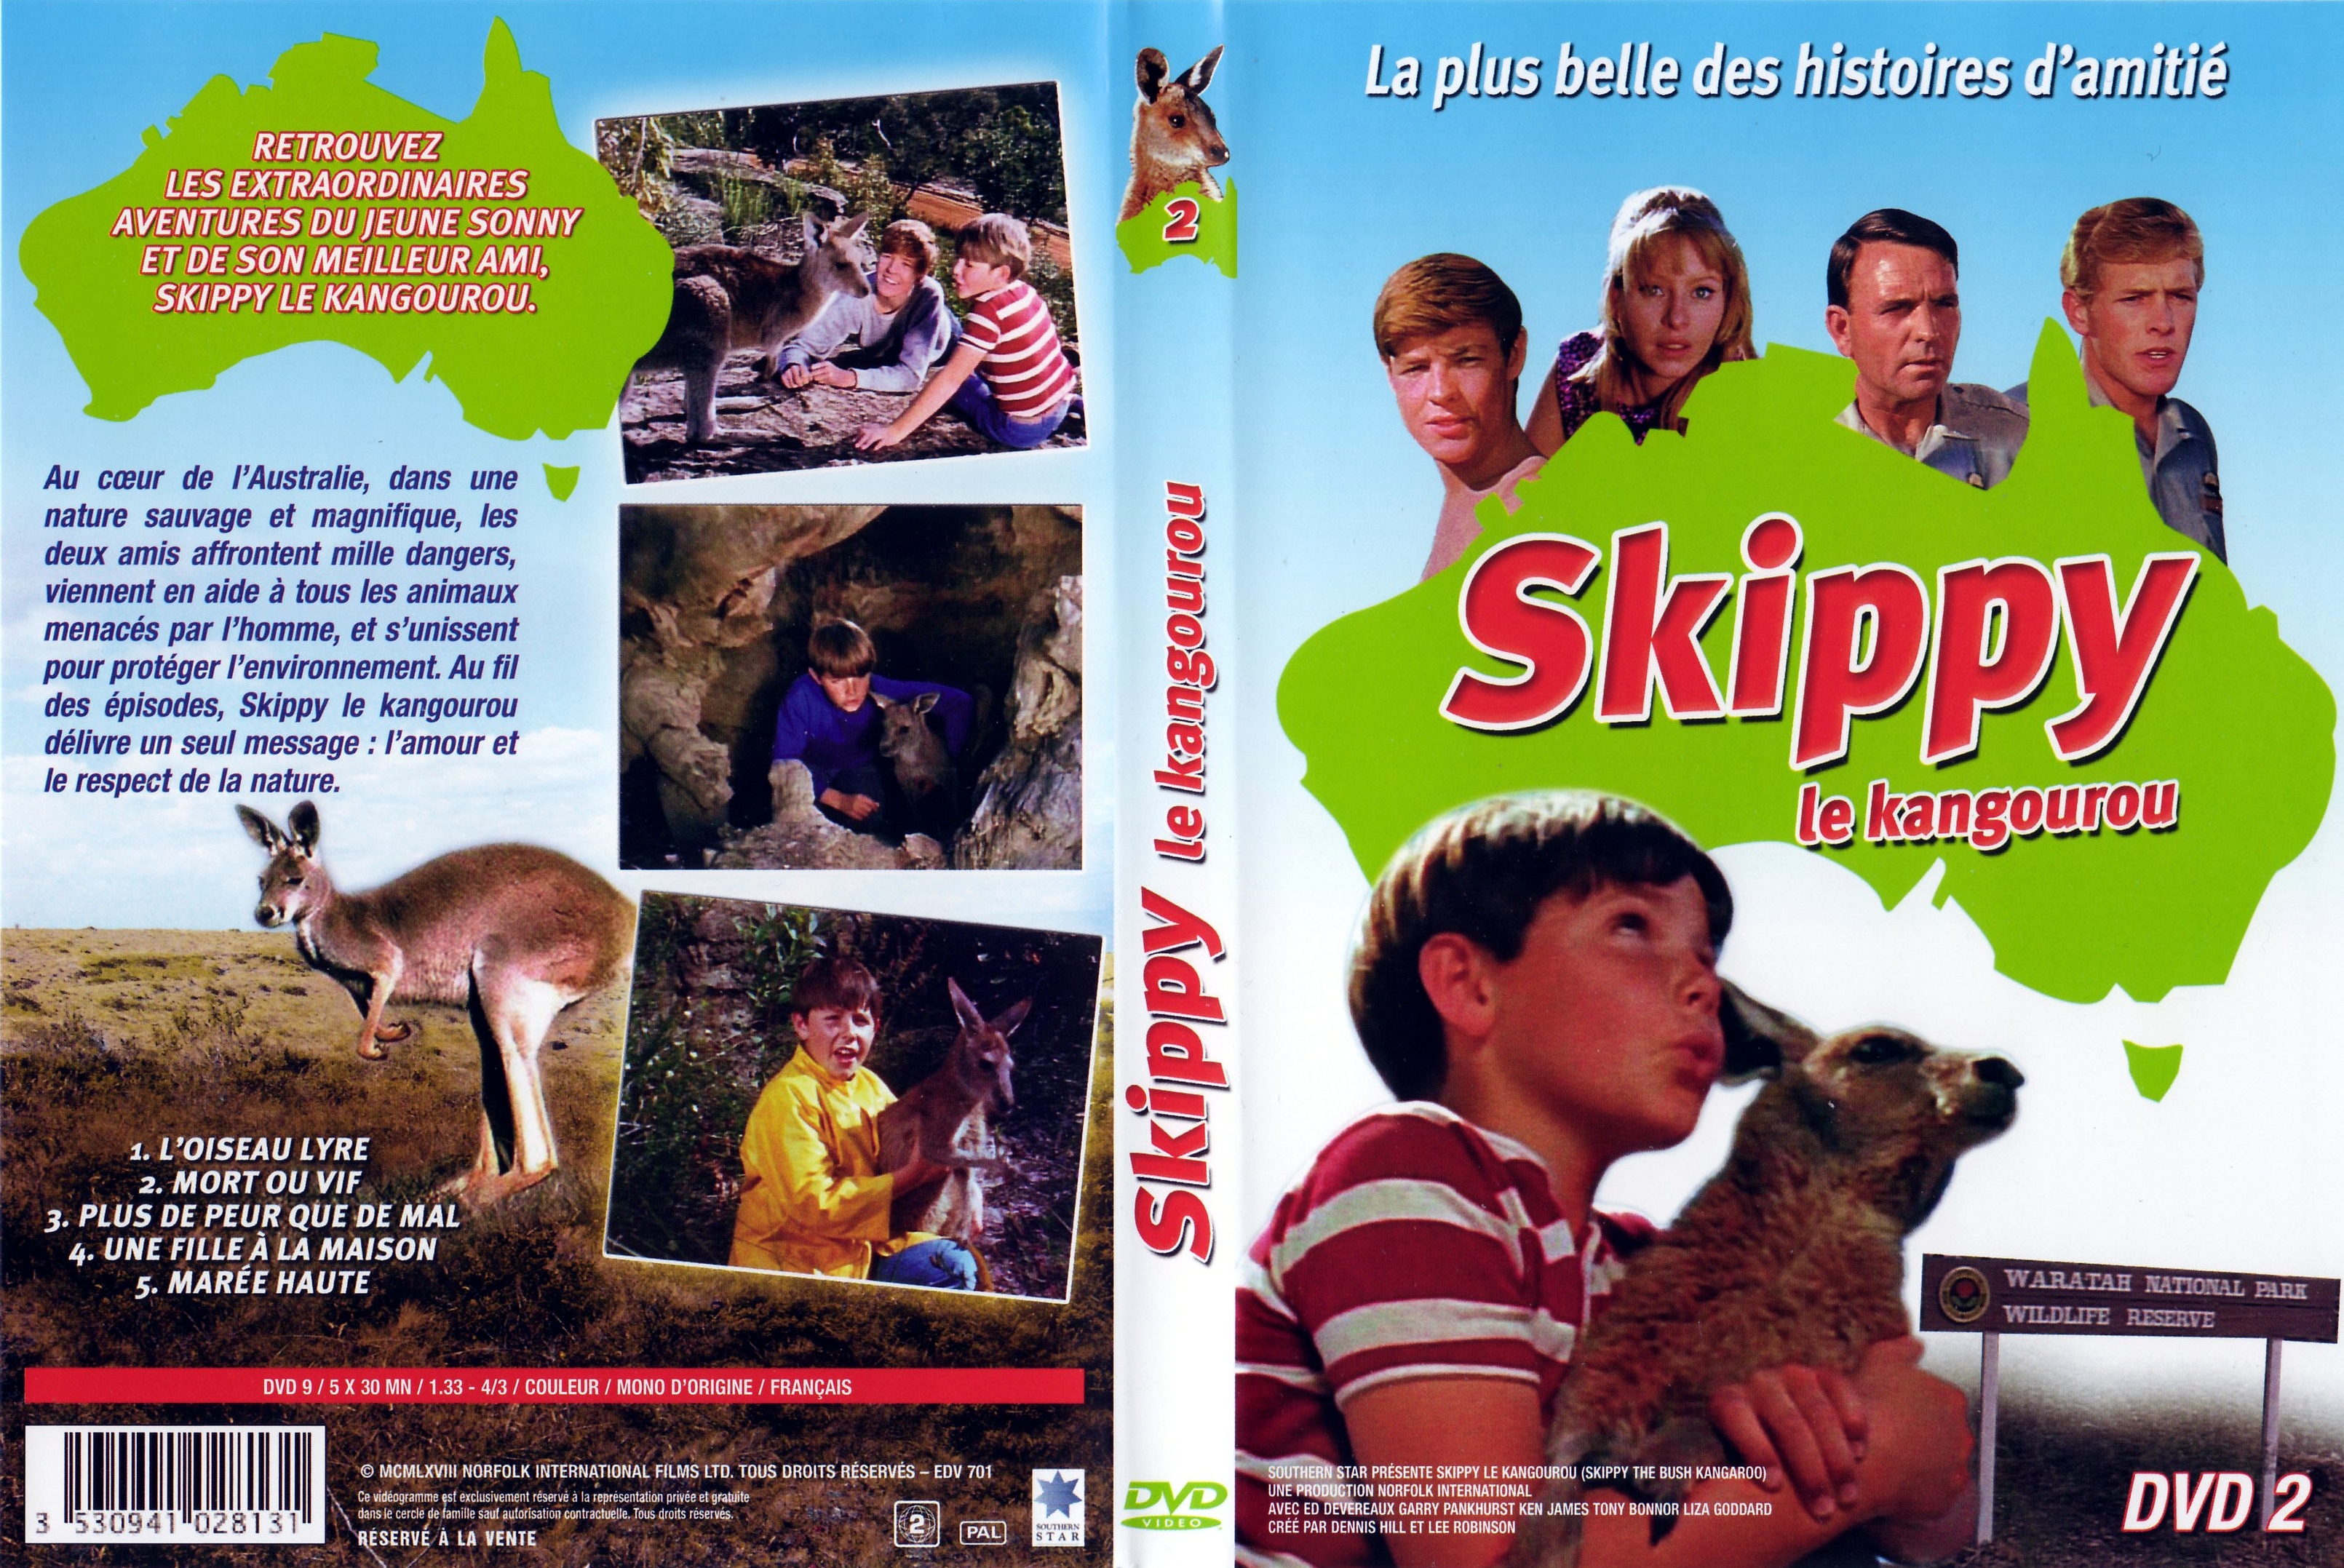 Jaquette DVD Skippy le kangourou DVD 2